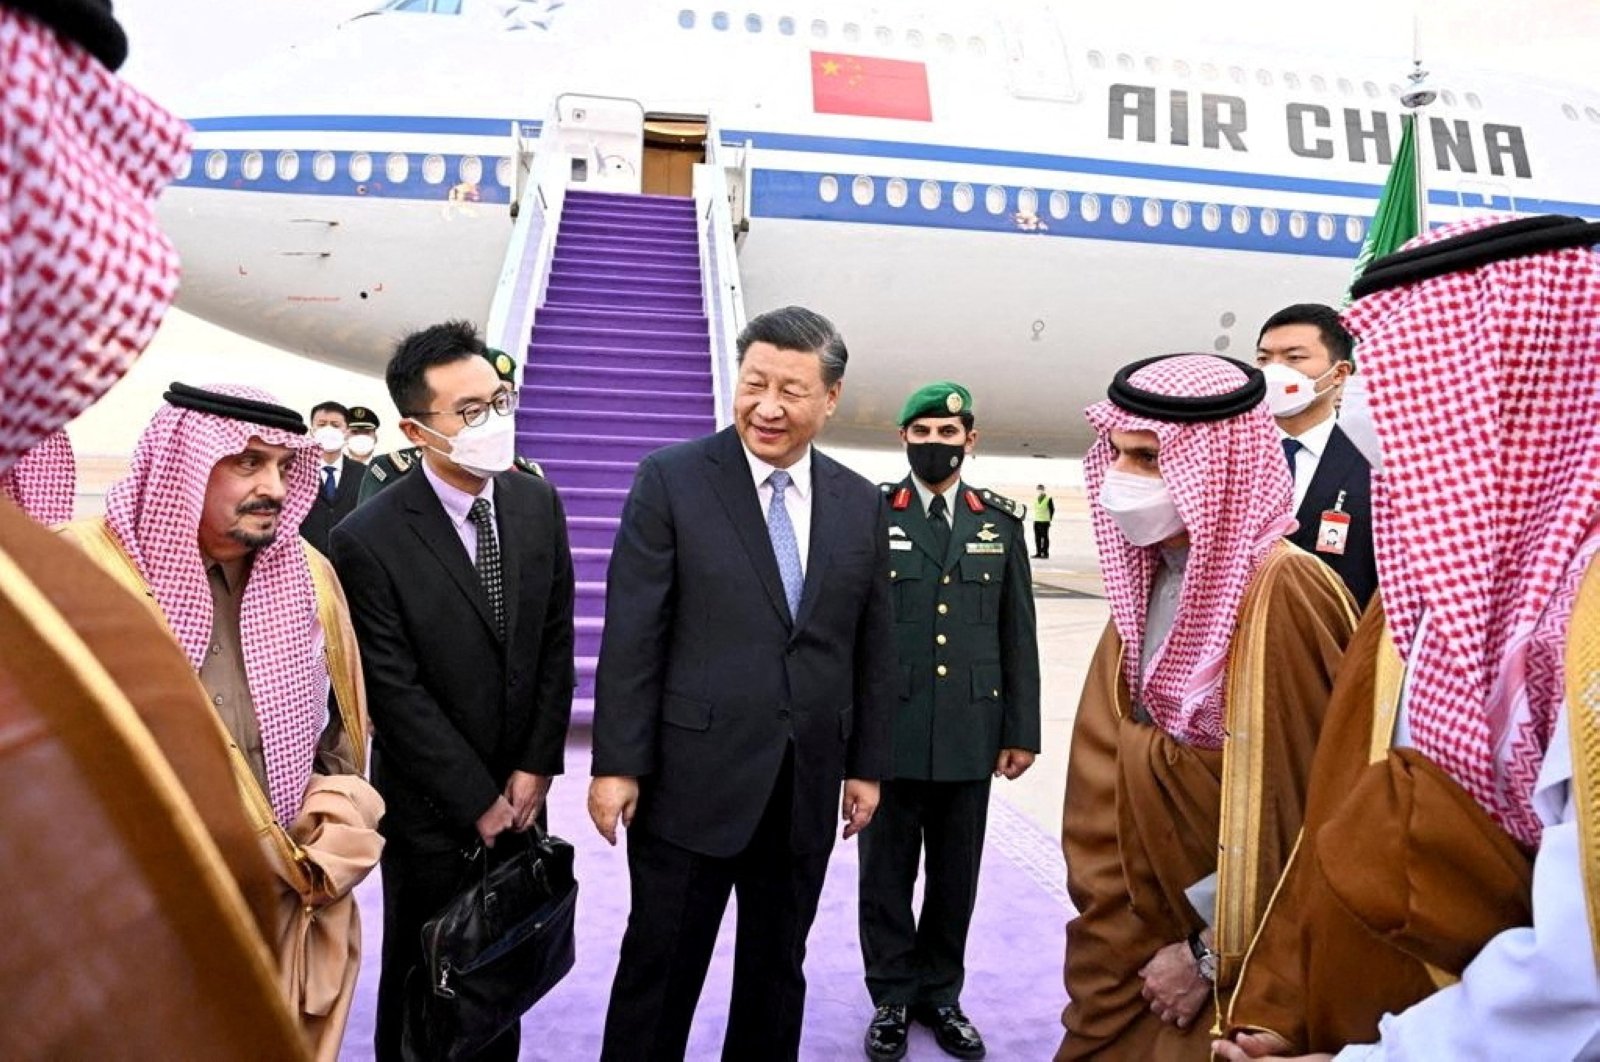 Presiden China Xi mengunjungi Arab Saudi untuk mempererat hubungan Teluk Arab